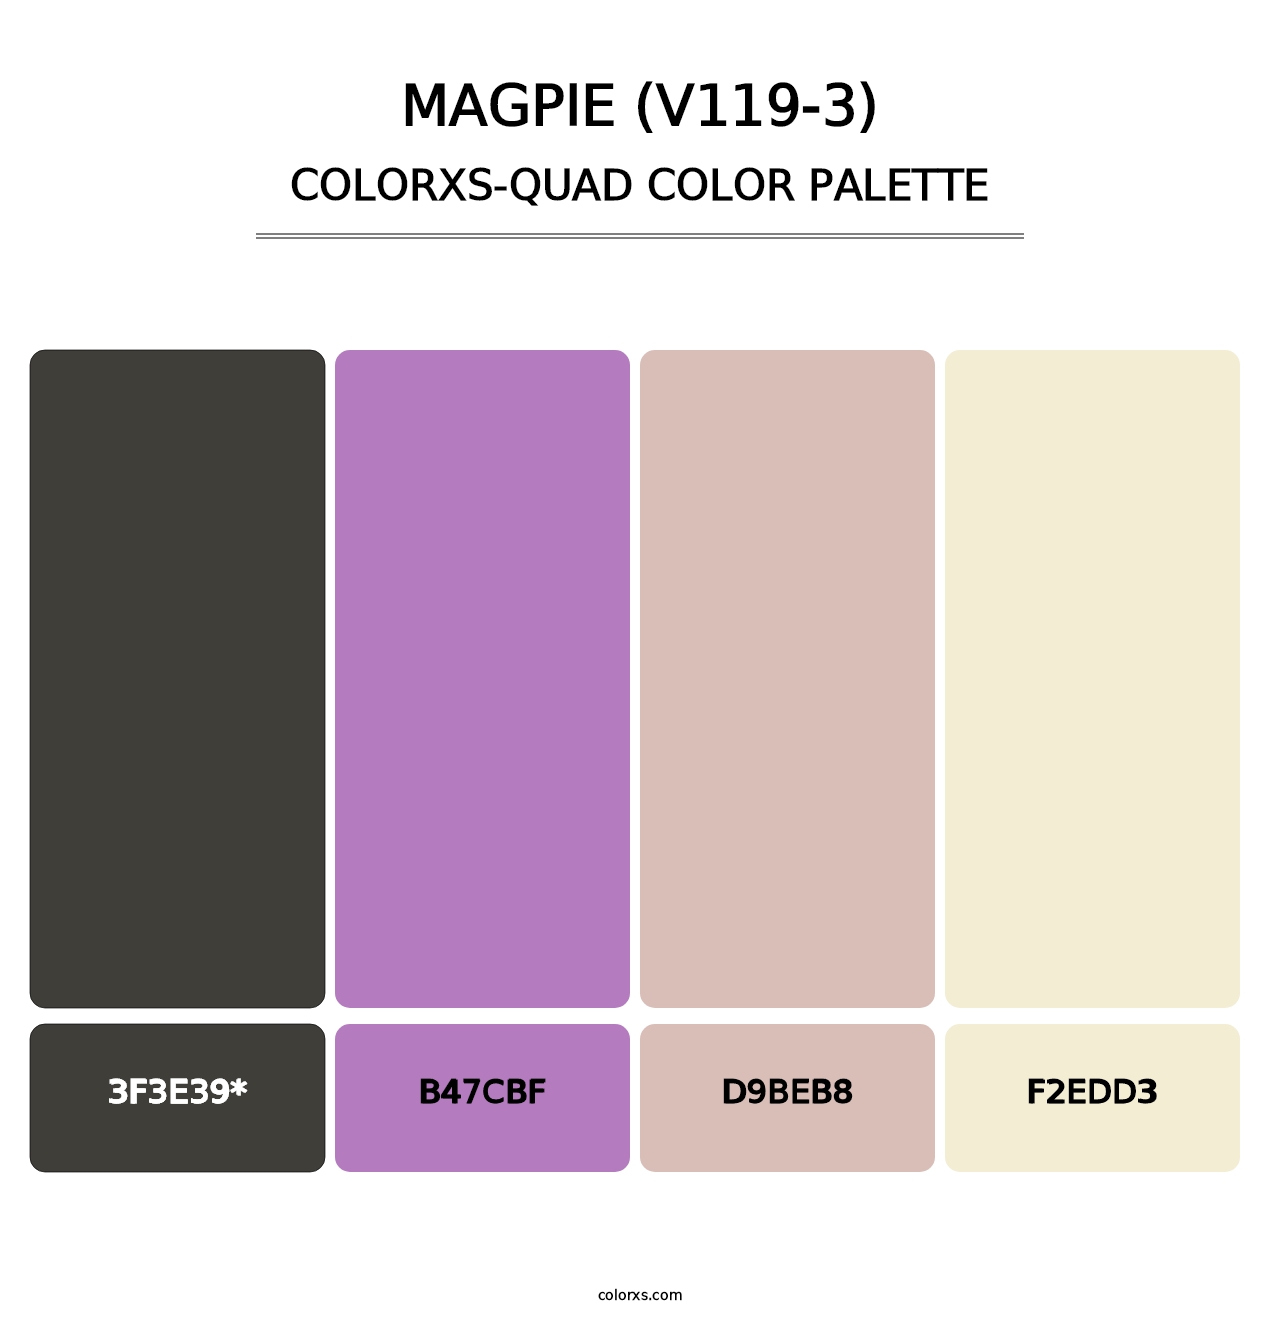 Magpie (V119-3) - Colorxs Quad Palette